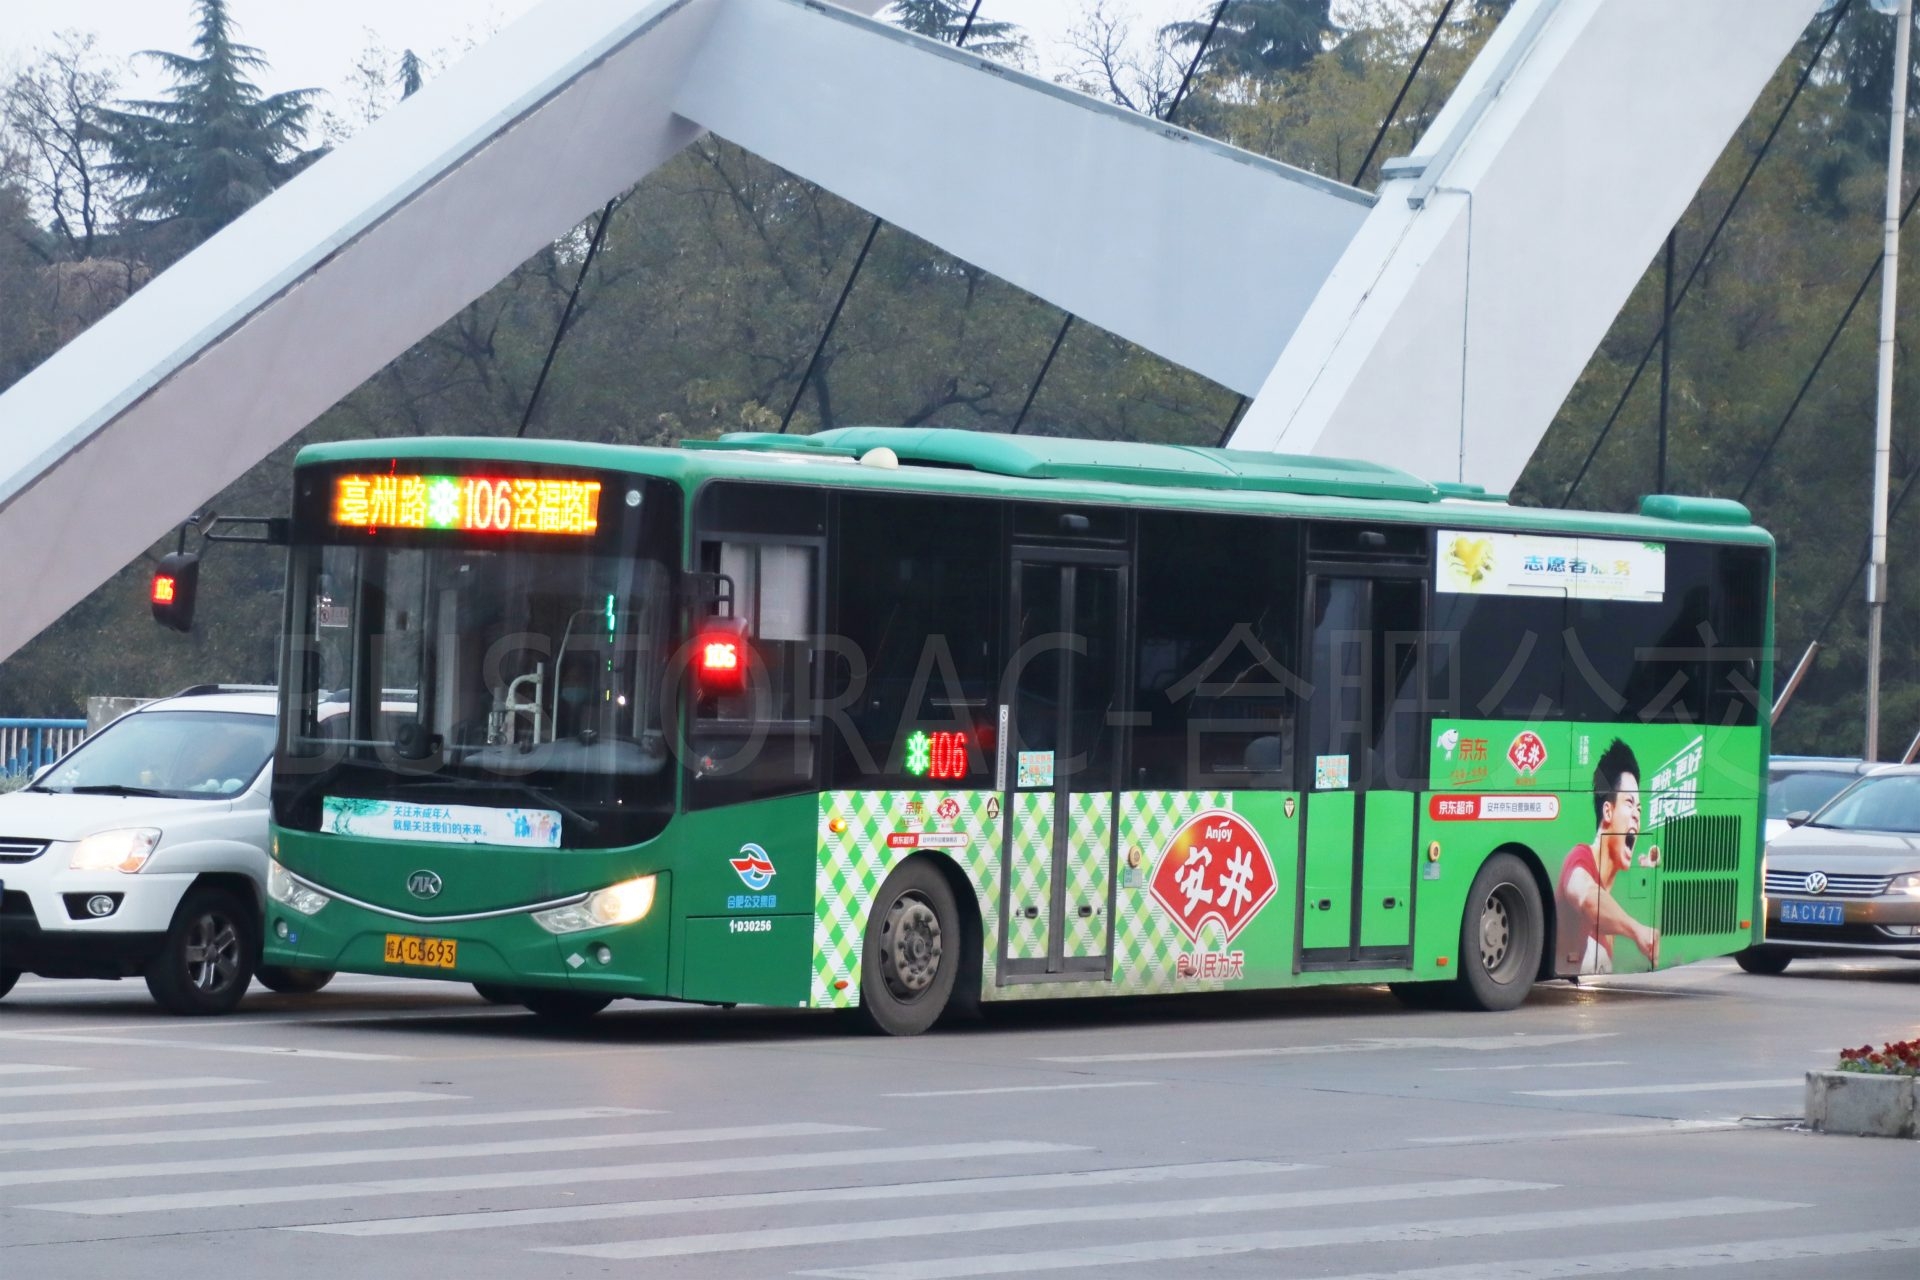 福州公交“为民办实事”项目已新辟和优化公交线路16条 - 中国焦点日报网